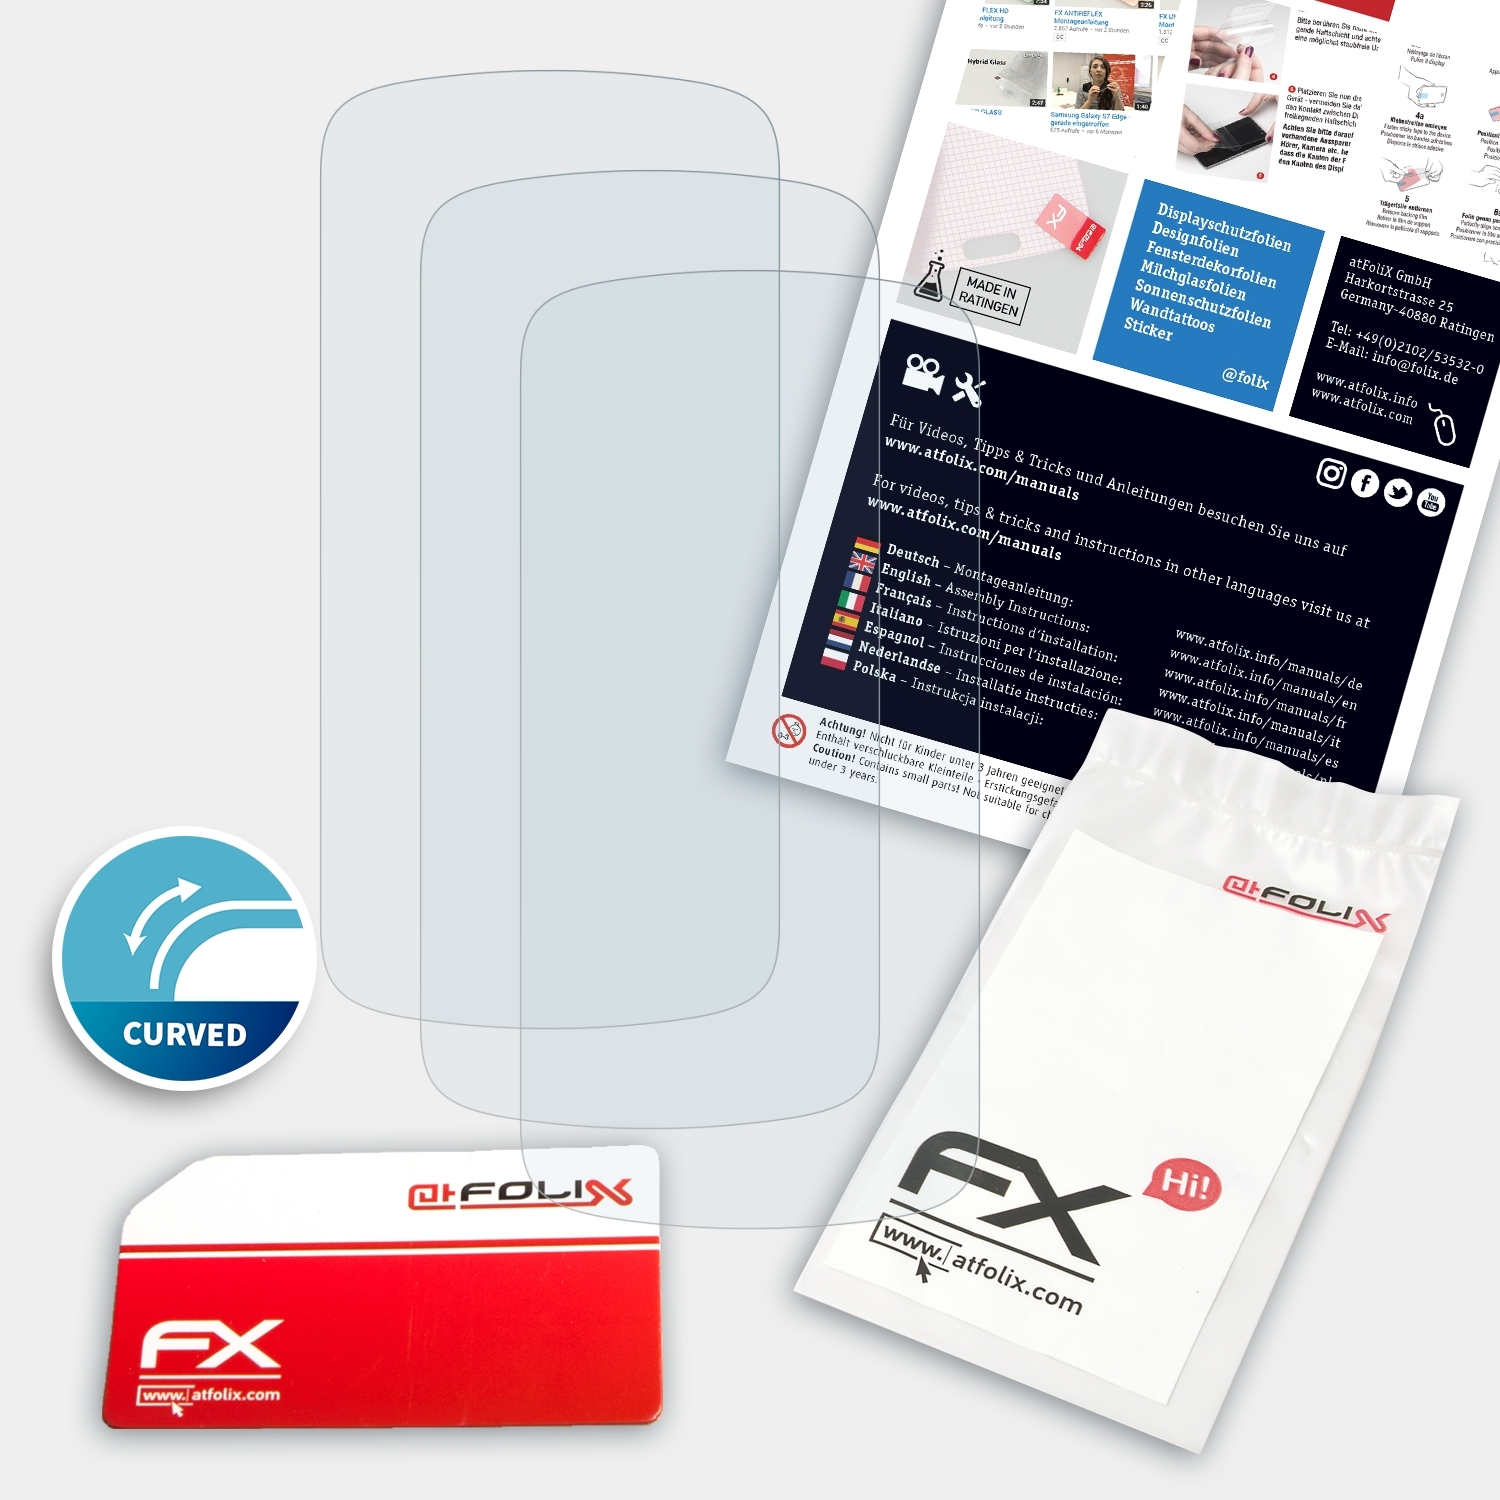 3x FX-ActiFleX Fit ATFOLIX Displayschutz(für Gear Pro) 2 Samsung